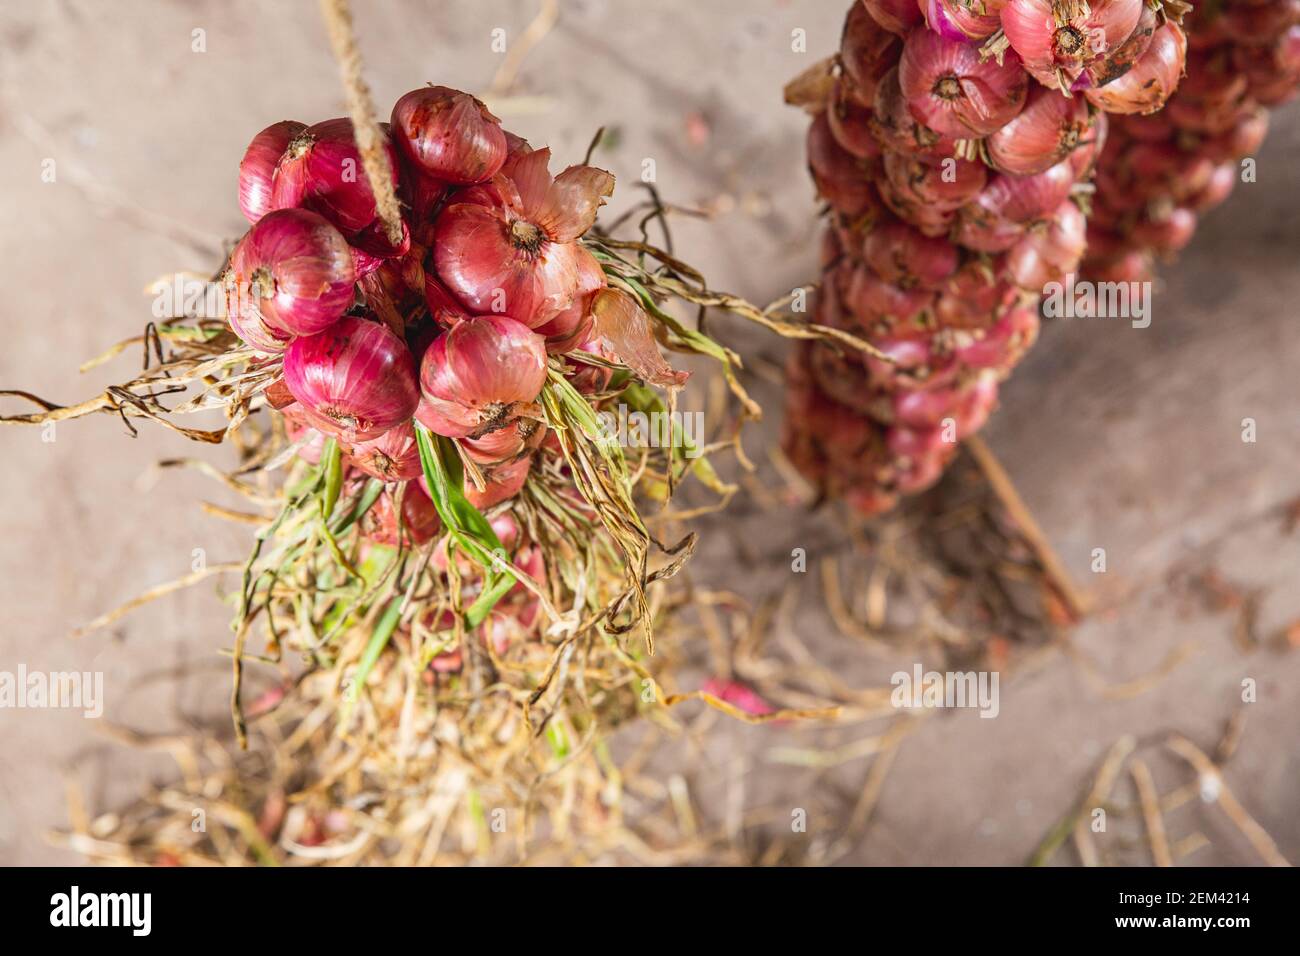 Un bouquet d'oignons rouges en gros plan, vue du dessus. Culture et stockage des légumes. Banque D'Images